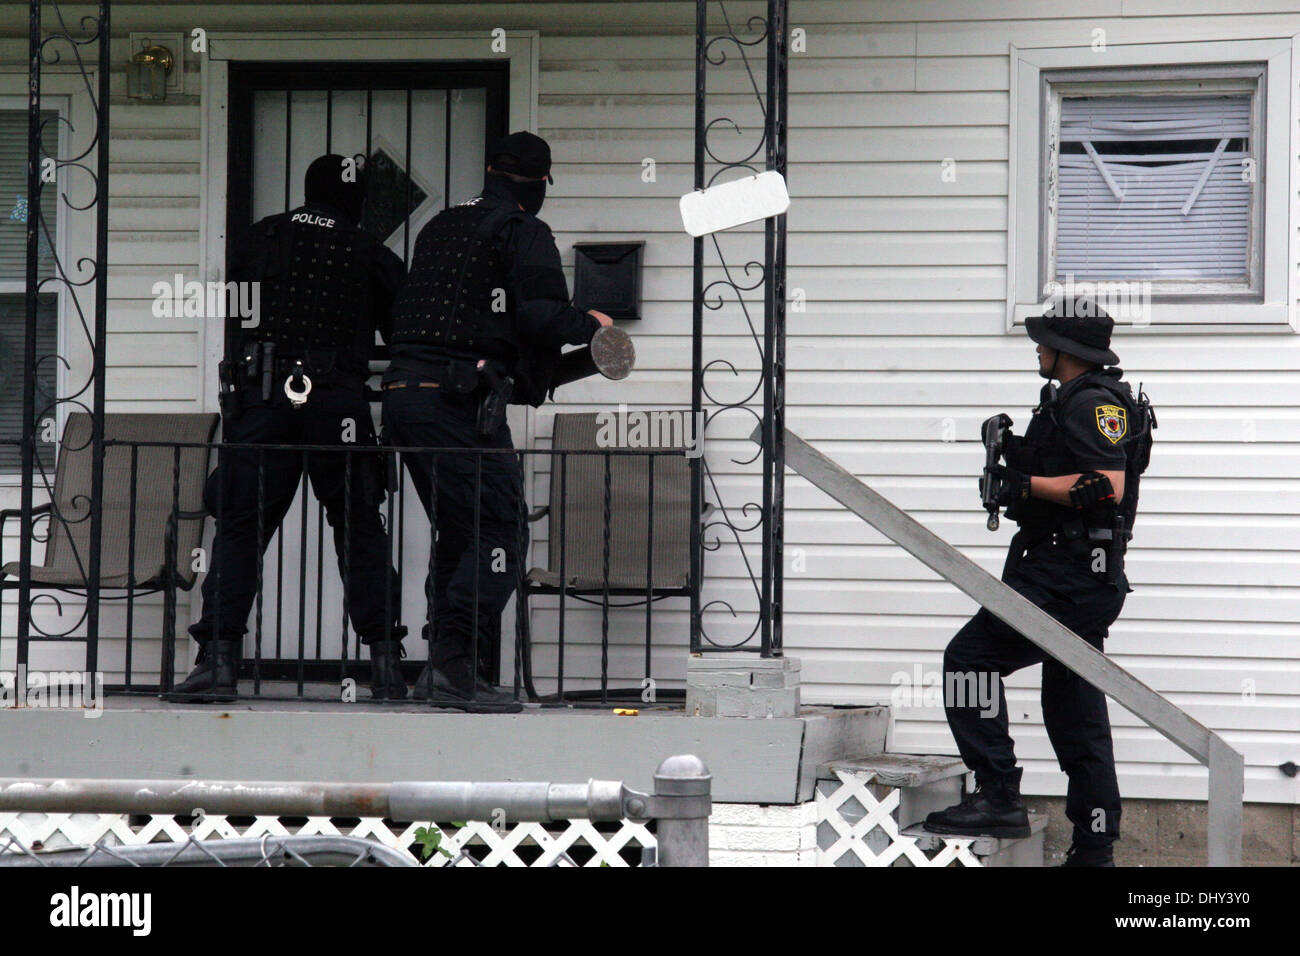 La police de Detroit - agents narcotiques Narcs - forcer l'entrée d'une maison au cours d'un raid en médicaments, à Détroit, Michigan, USA Banque D'Images